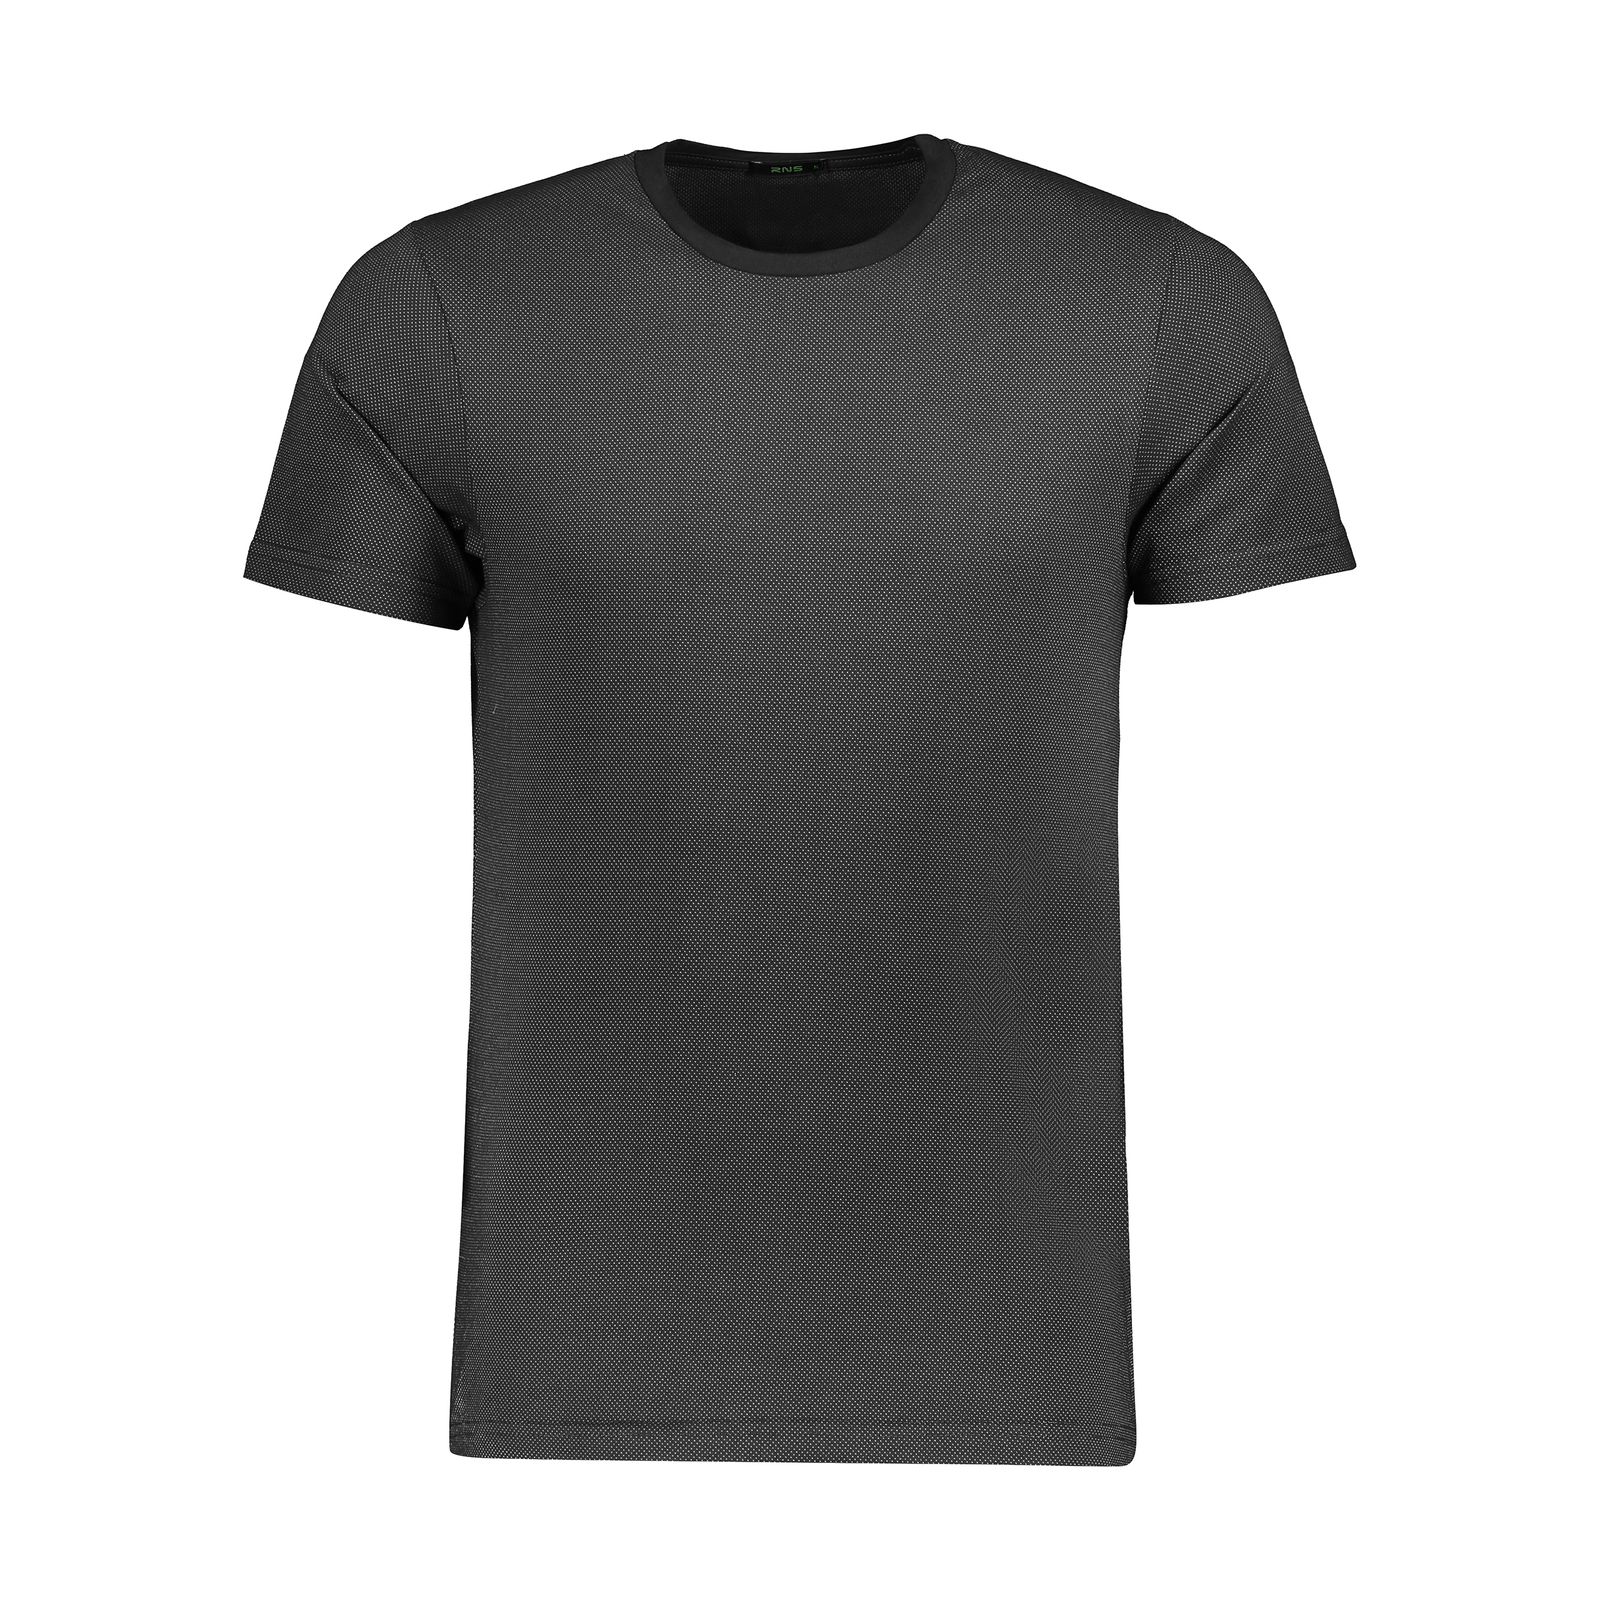 تی شرت مردانه آر ان اس مدل 1131143-99 -  - 1